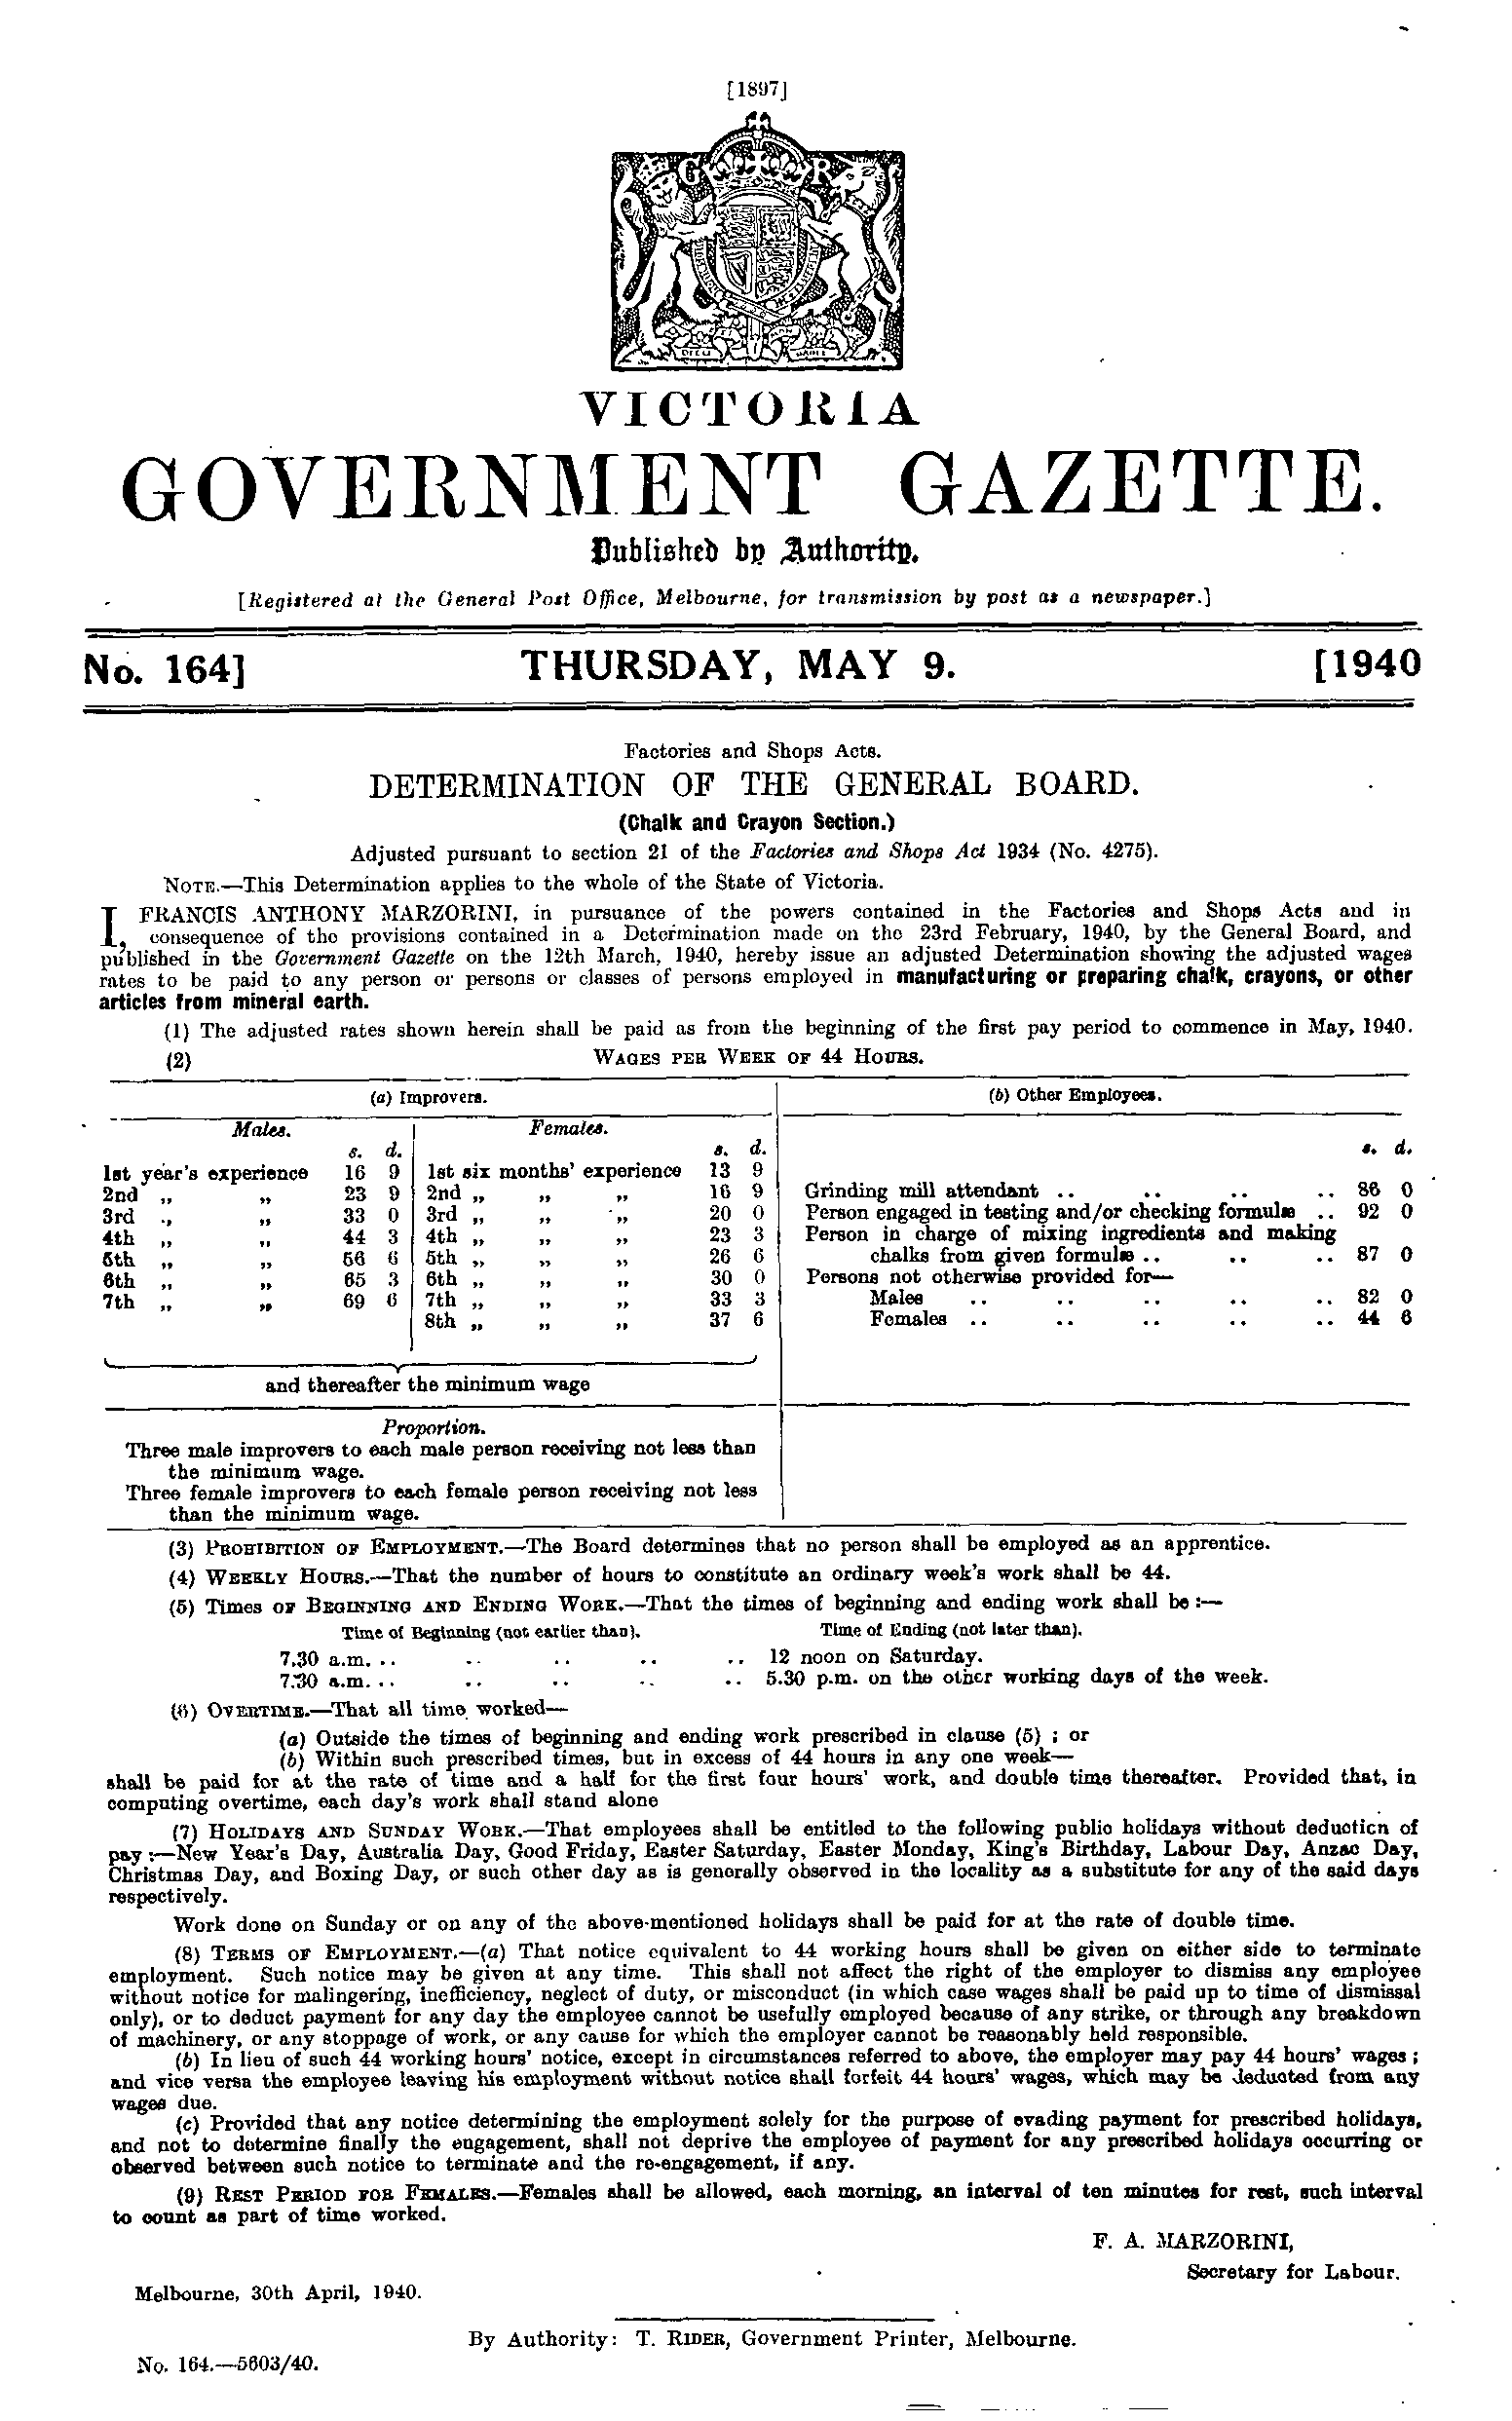 victoria-government-gazette-online-archive-1940-p1897